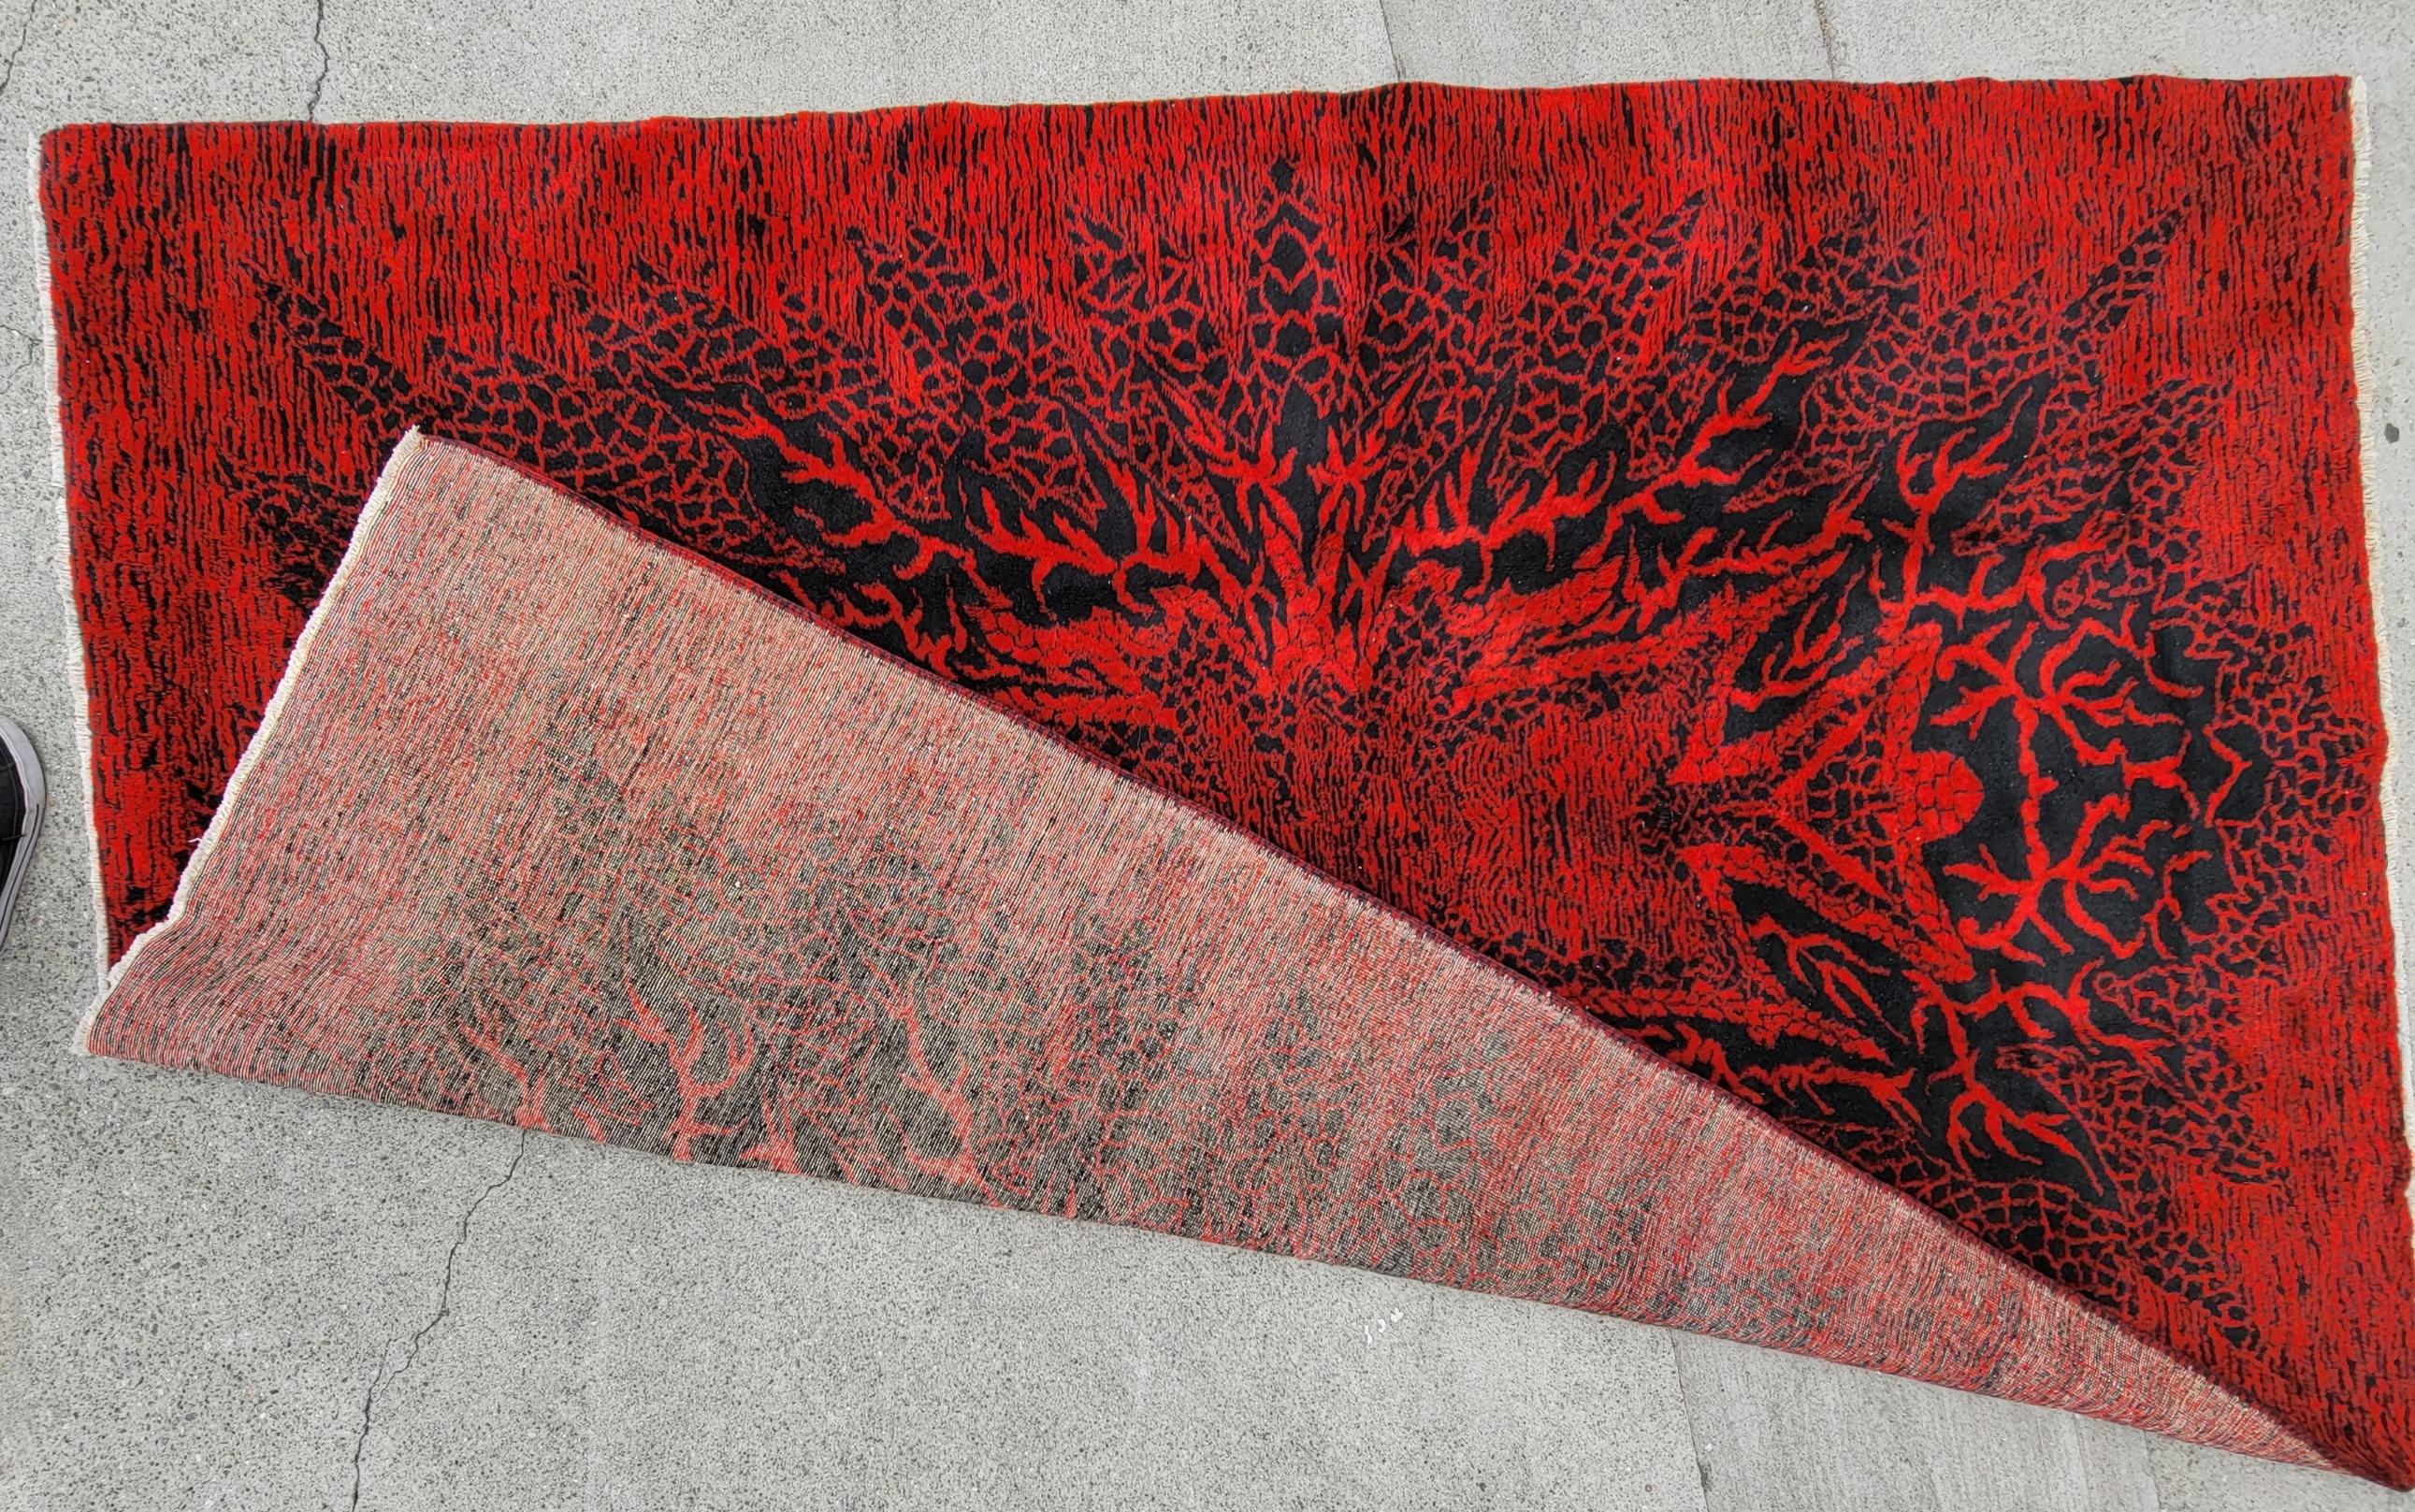 Mid Century Modern Hand Made Zeki Muren Teppich. Das rot-schwarze Design mit der Mitte schreit förmlich danach, bemerkt zu werden. 

Maße: ca. 76 breit x 113 lang
